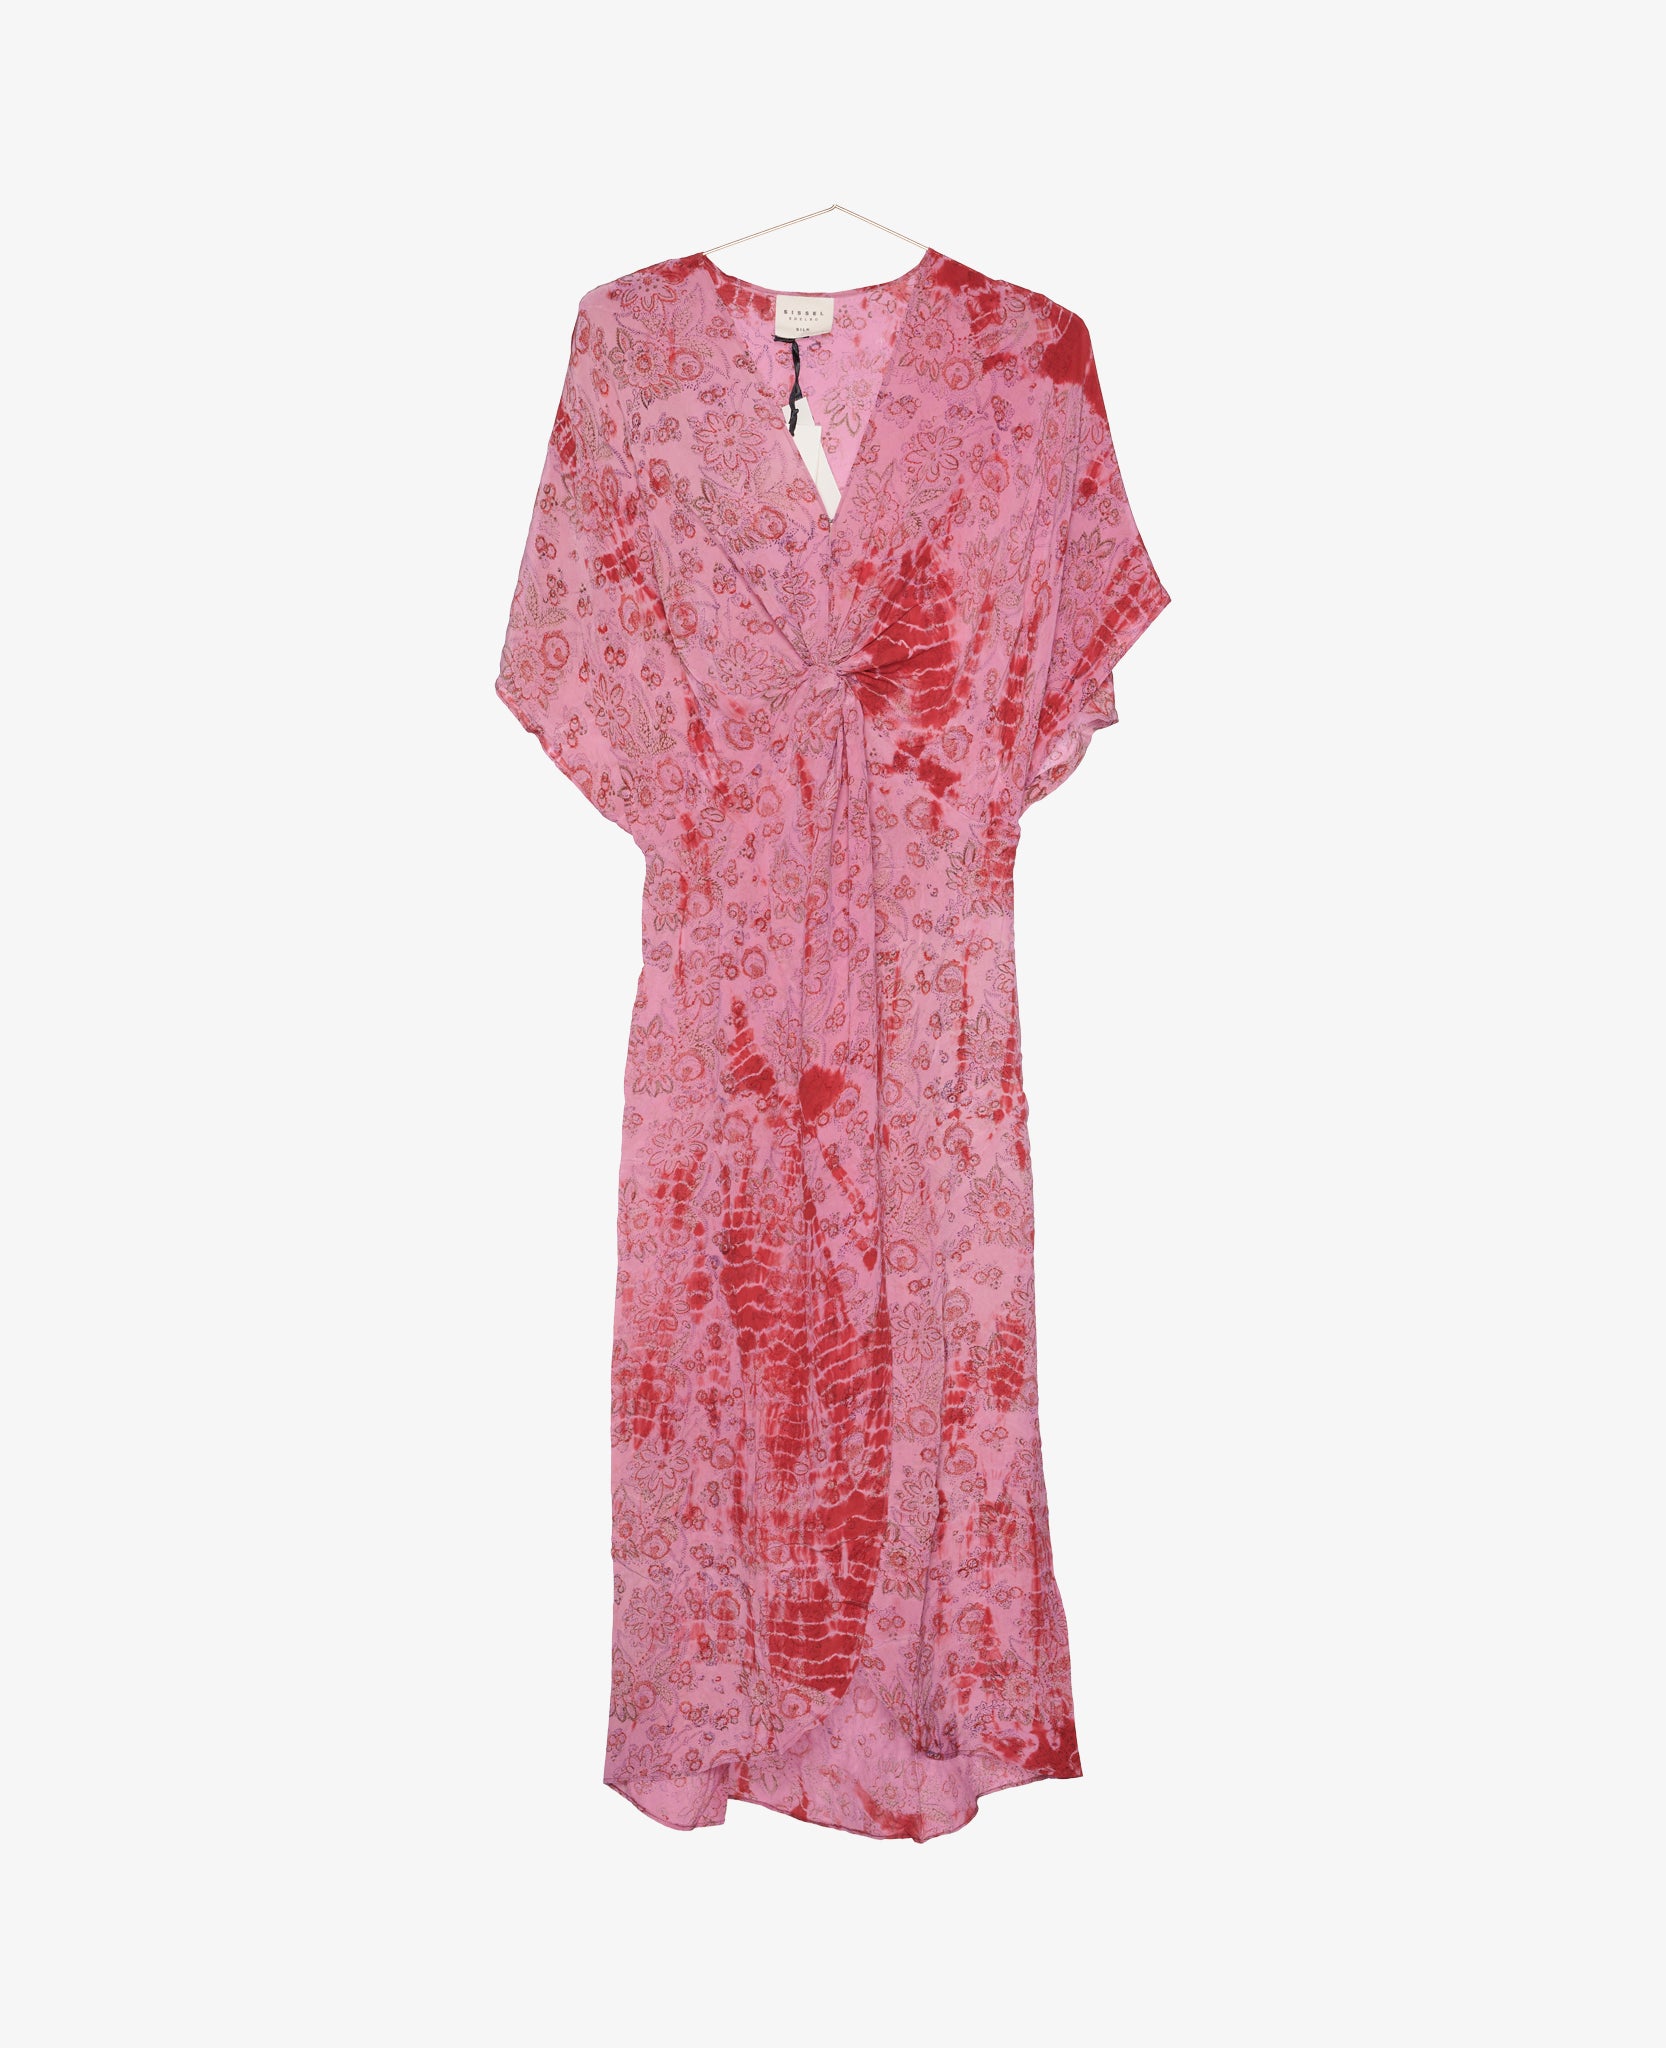 Monaco Silk Dress - No. 275 One-Size